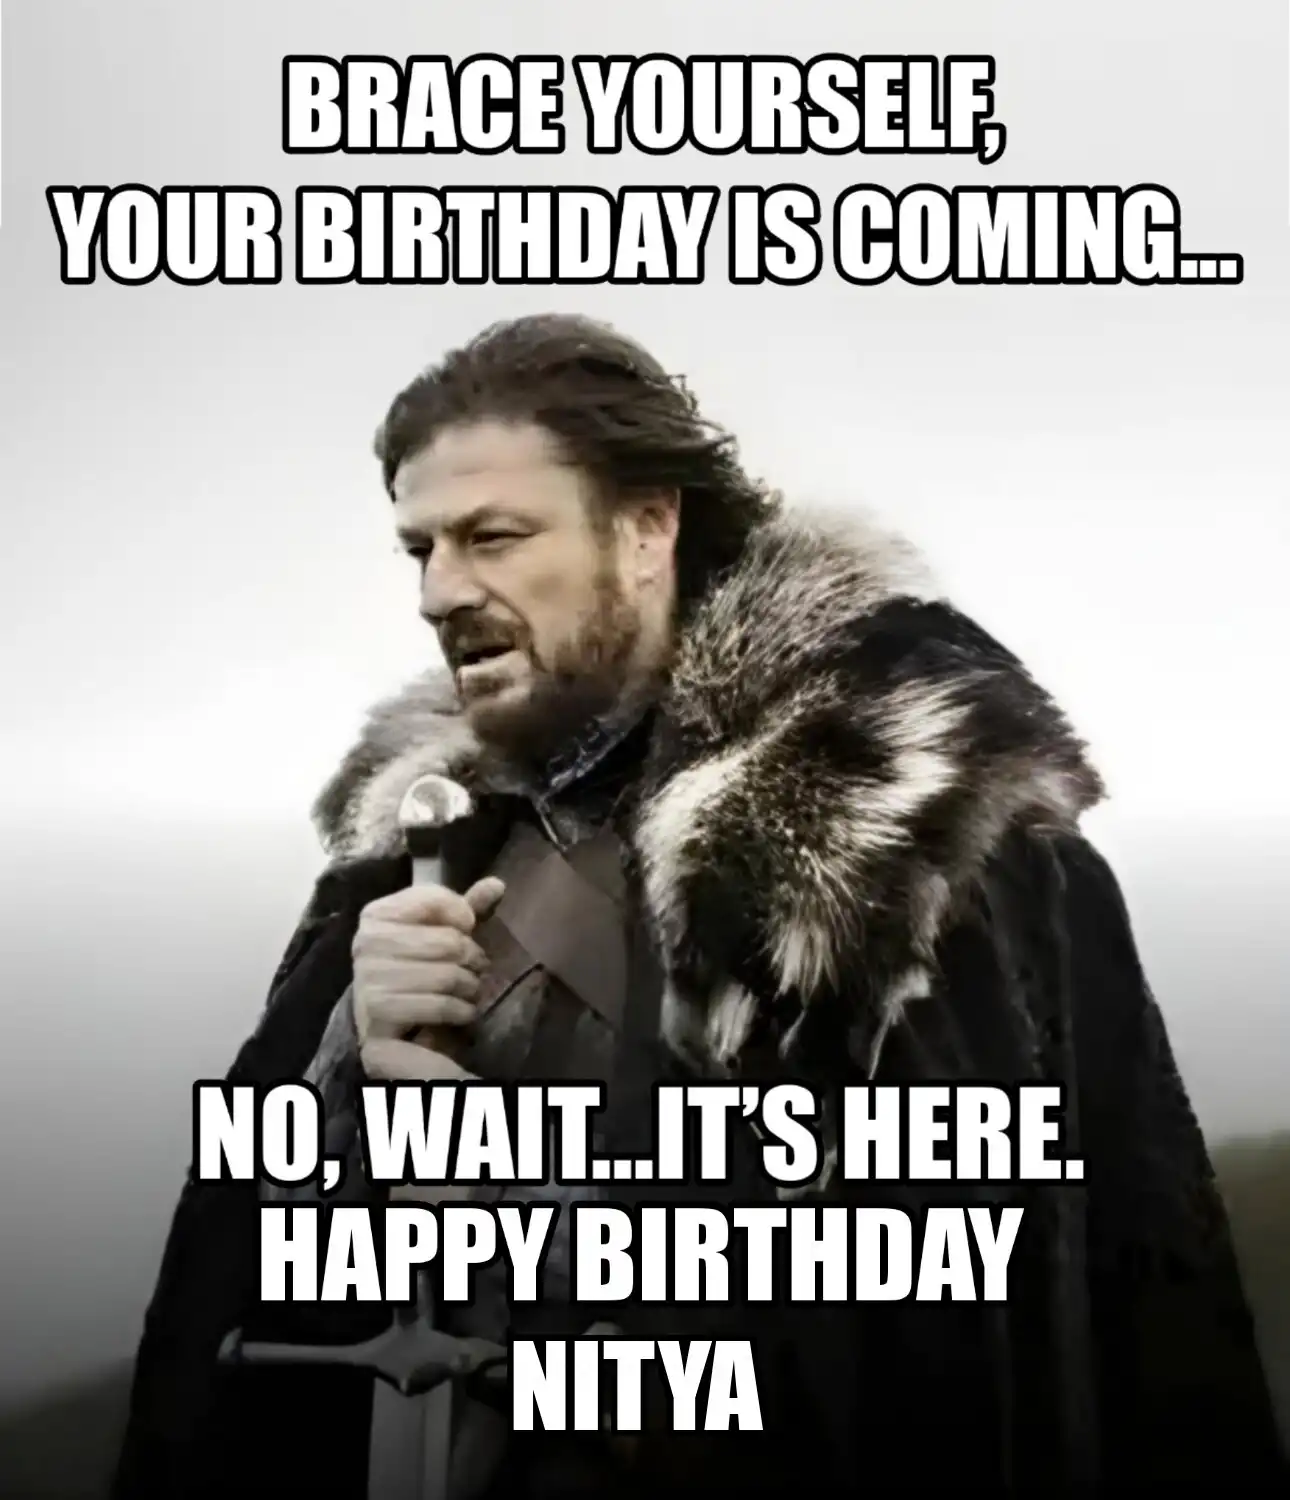 Happy Birthday Nitya Brace Yourself Your Birthday Is Coming Meme